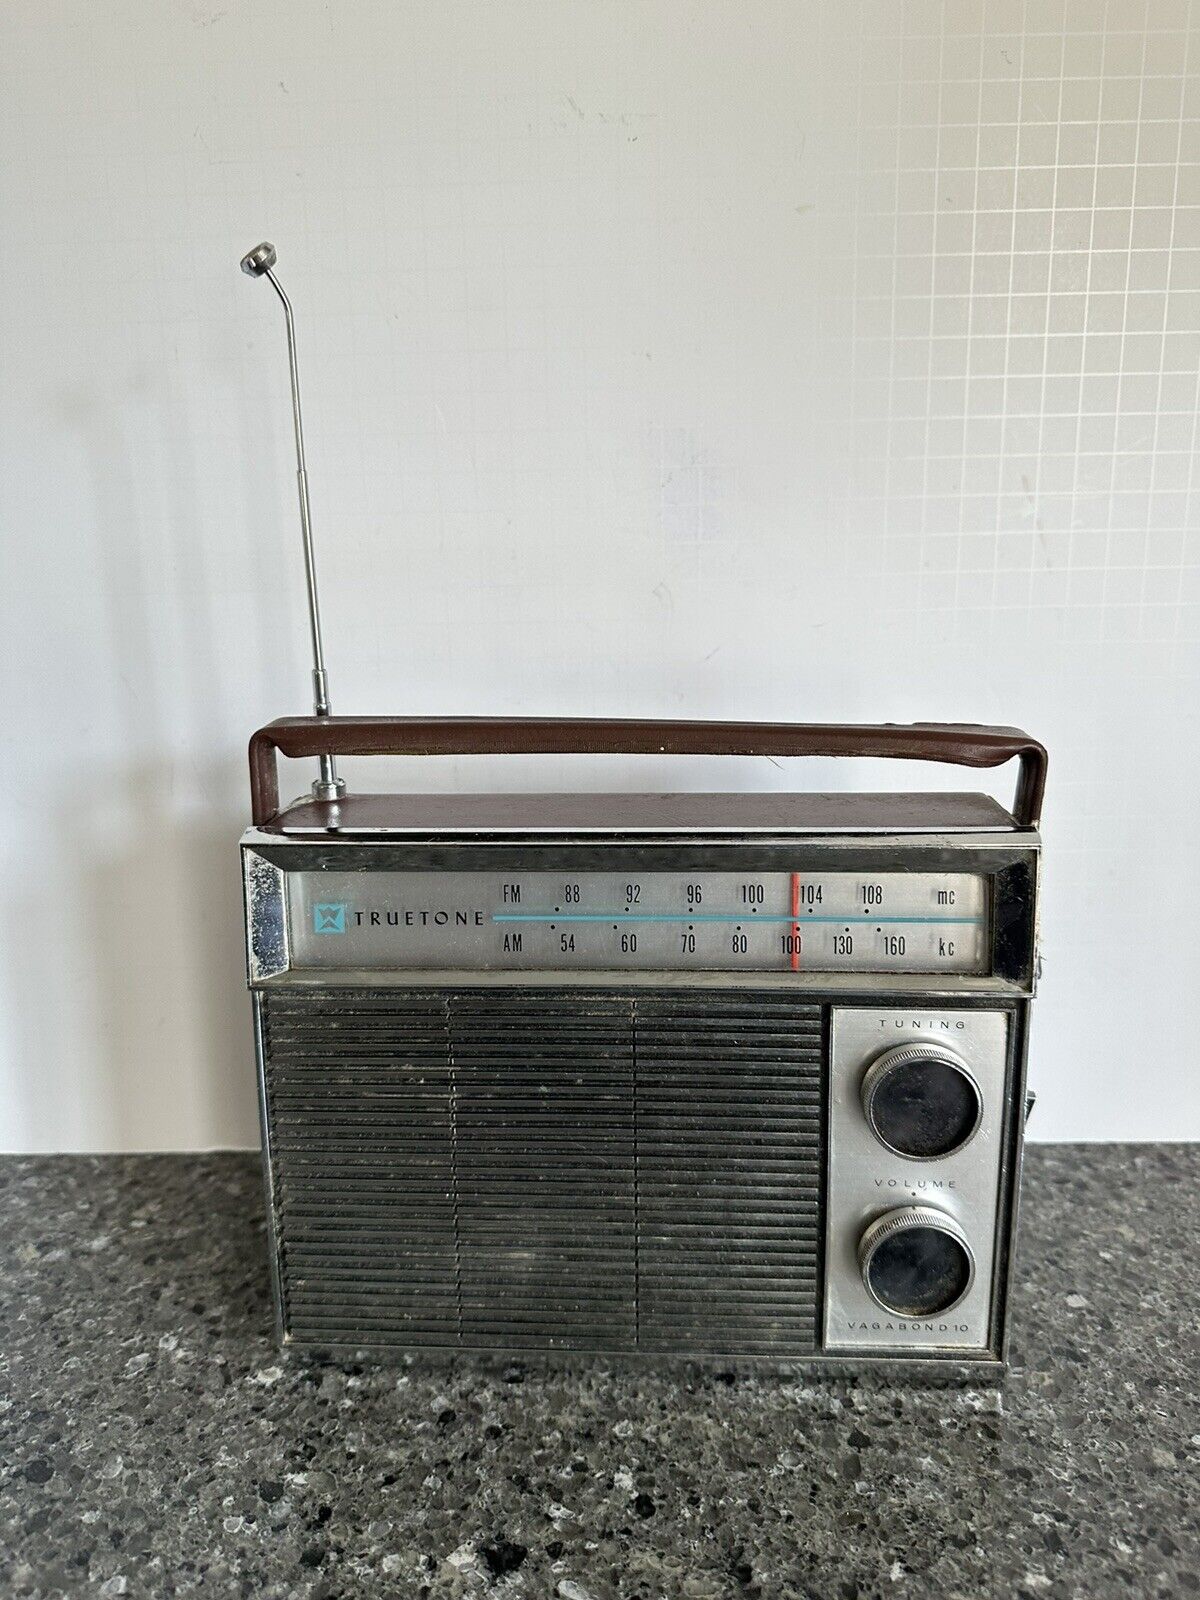 Truetone Vagabond 10 Portable AM/FM Radio | Model TAE-3754A-76 Vintage 1960's